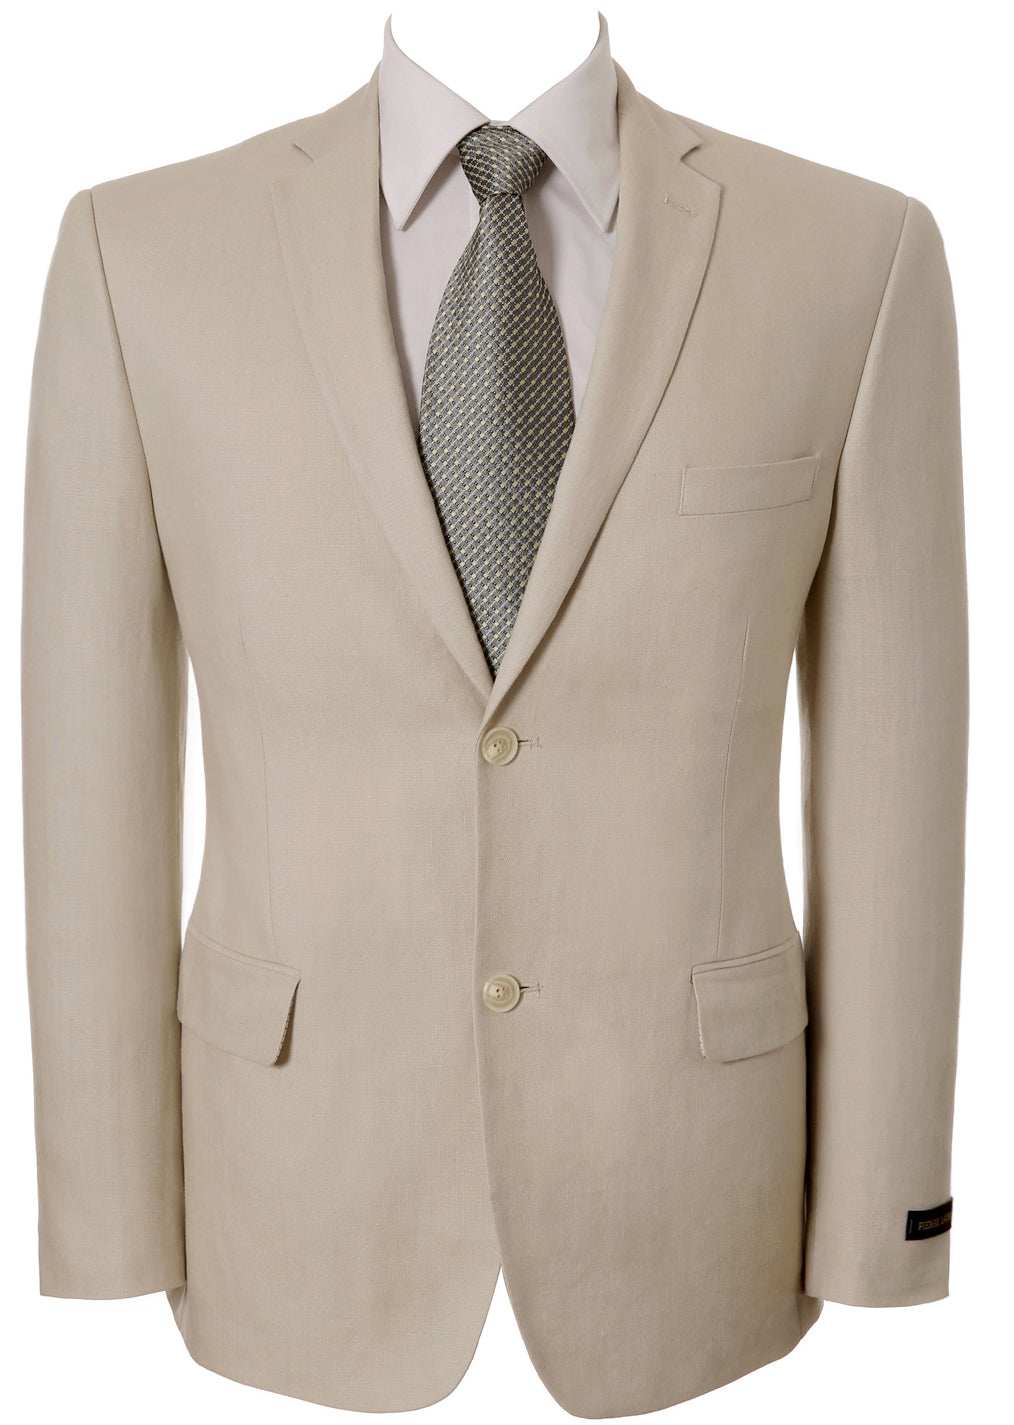 Men's Casual Sport Coat Slim Fit Lightweight Linen Blazer Jacket